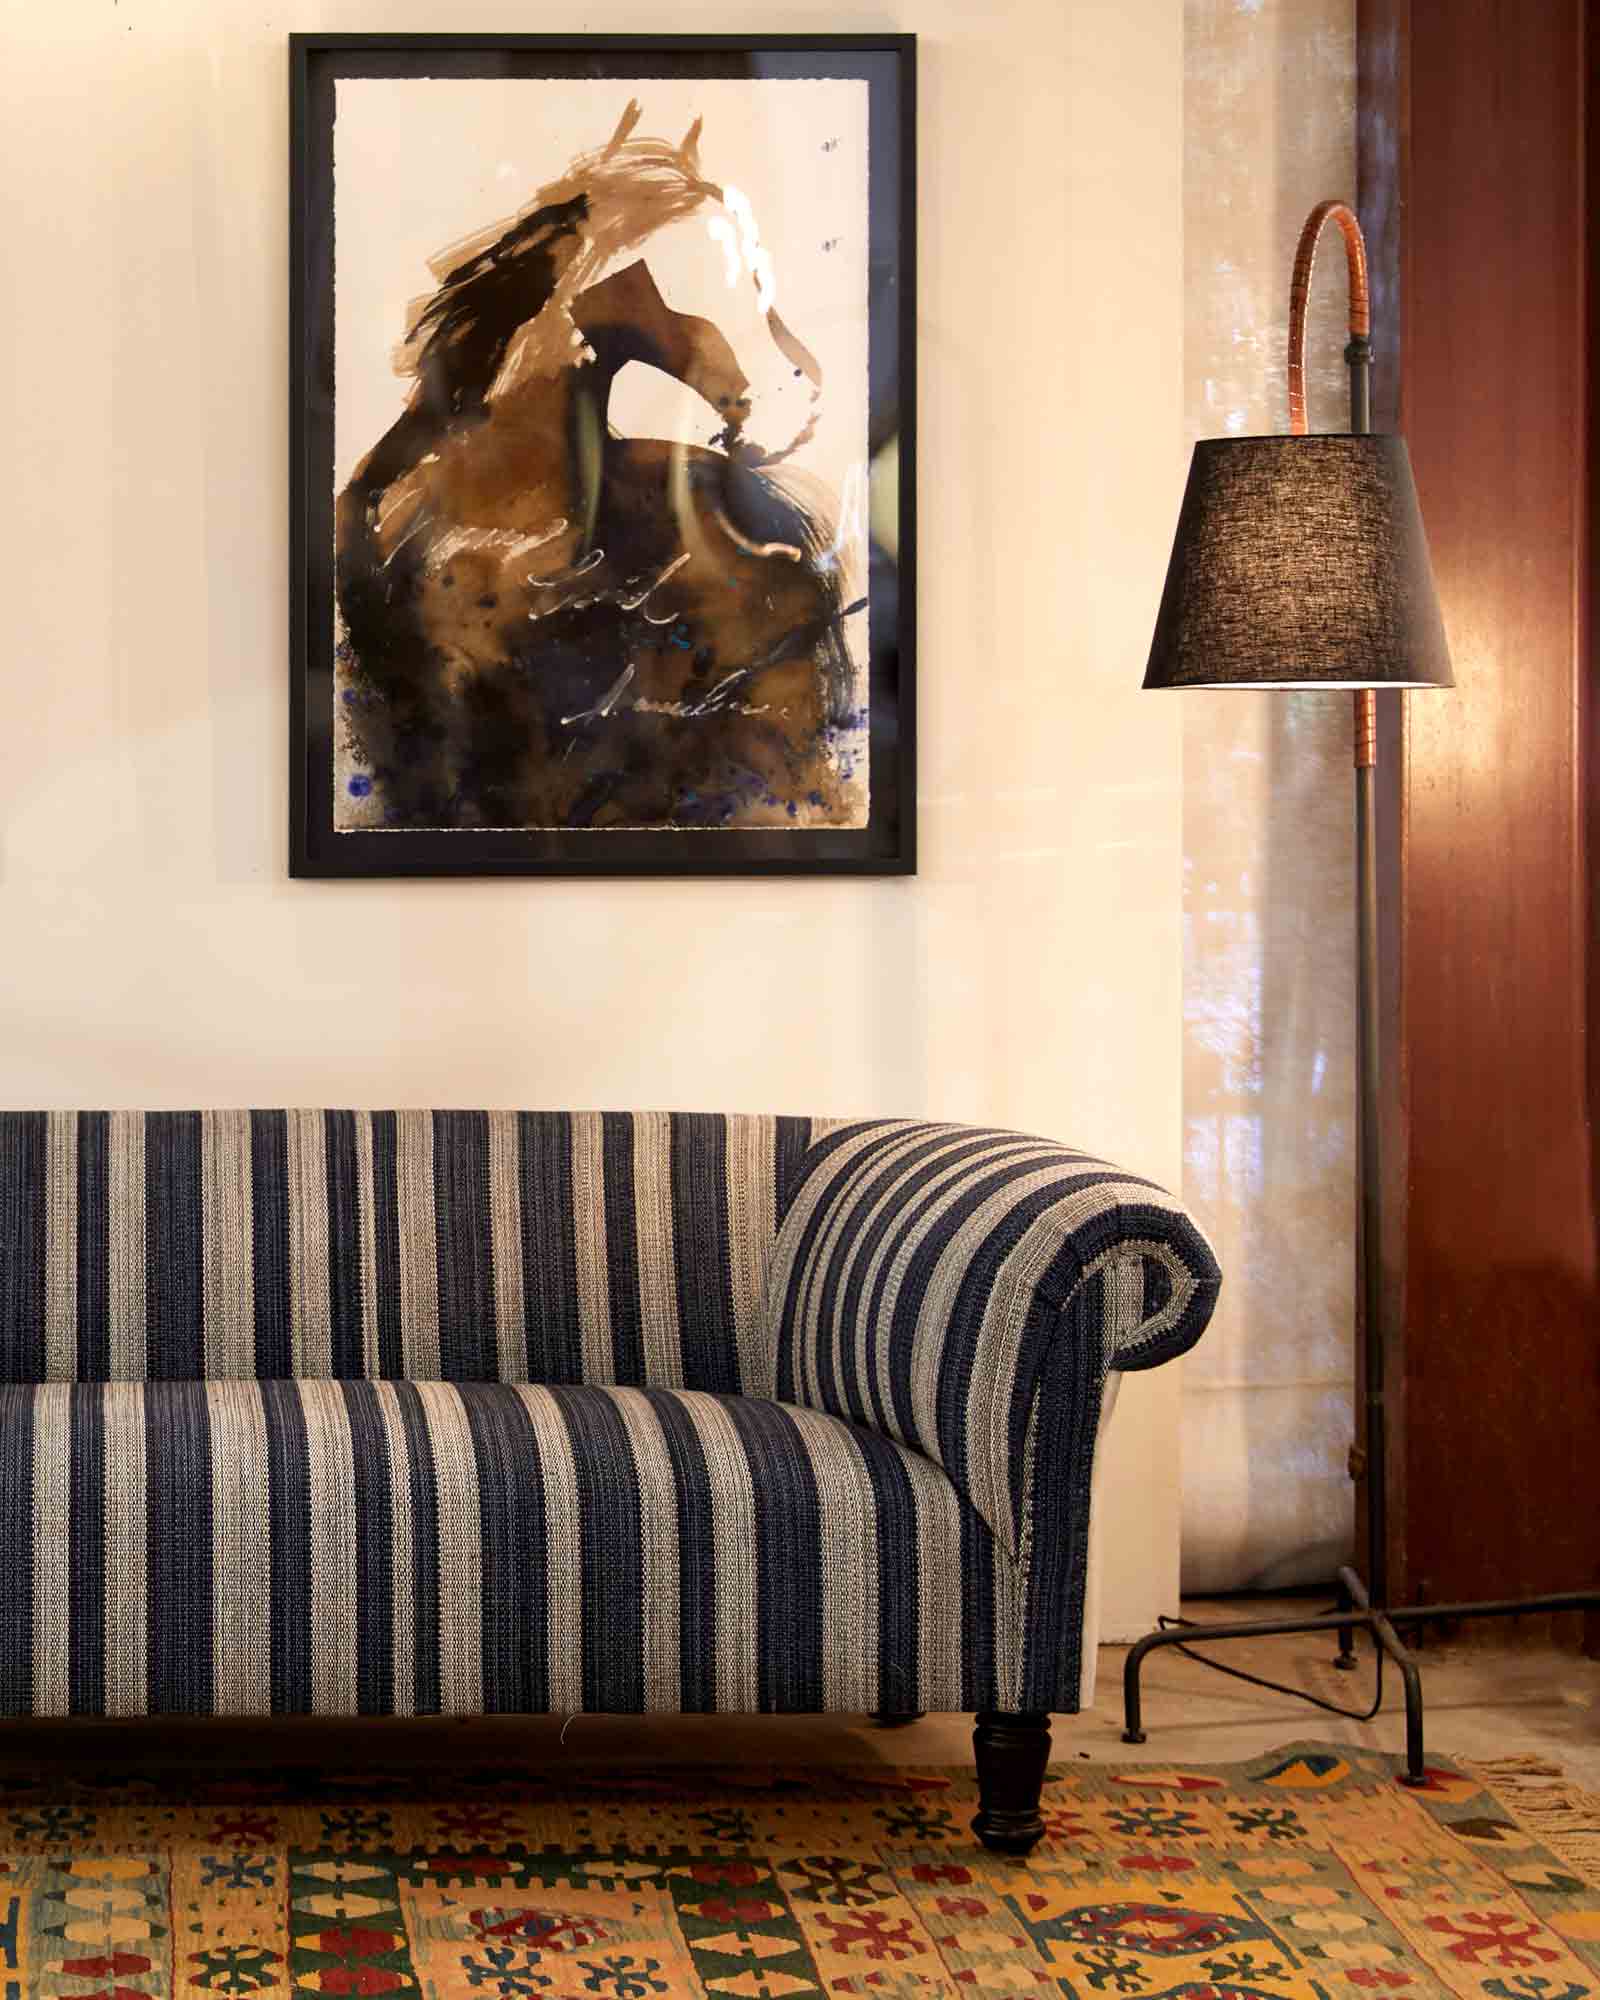  蓝色和白色织物的软垫沙发靠着白色的墙壁，墙上挂着一幅马画. 沙发旁边是金属底座落地灯，有一个深棕色的灯罩.  